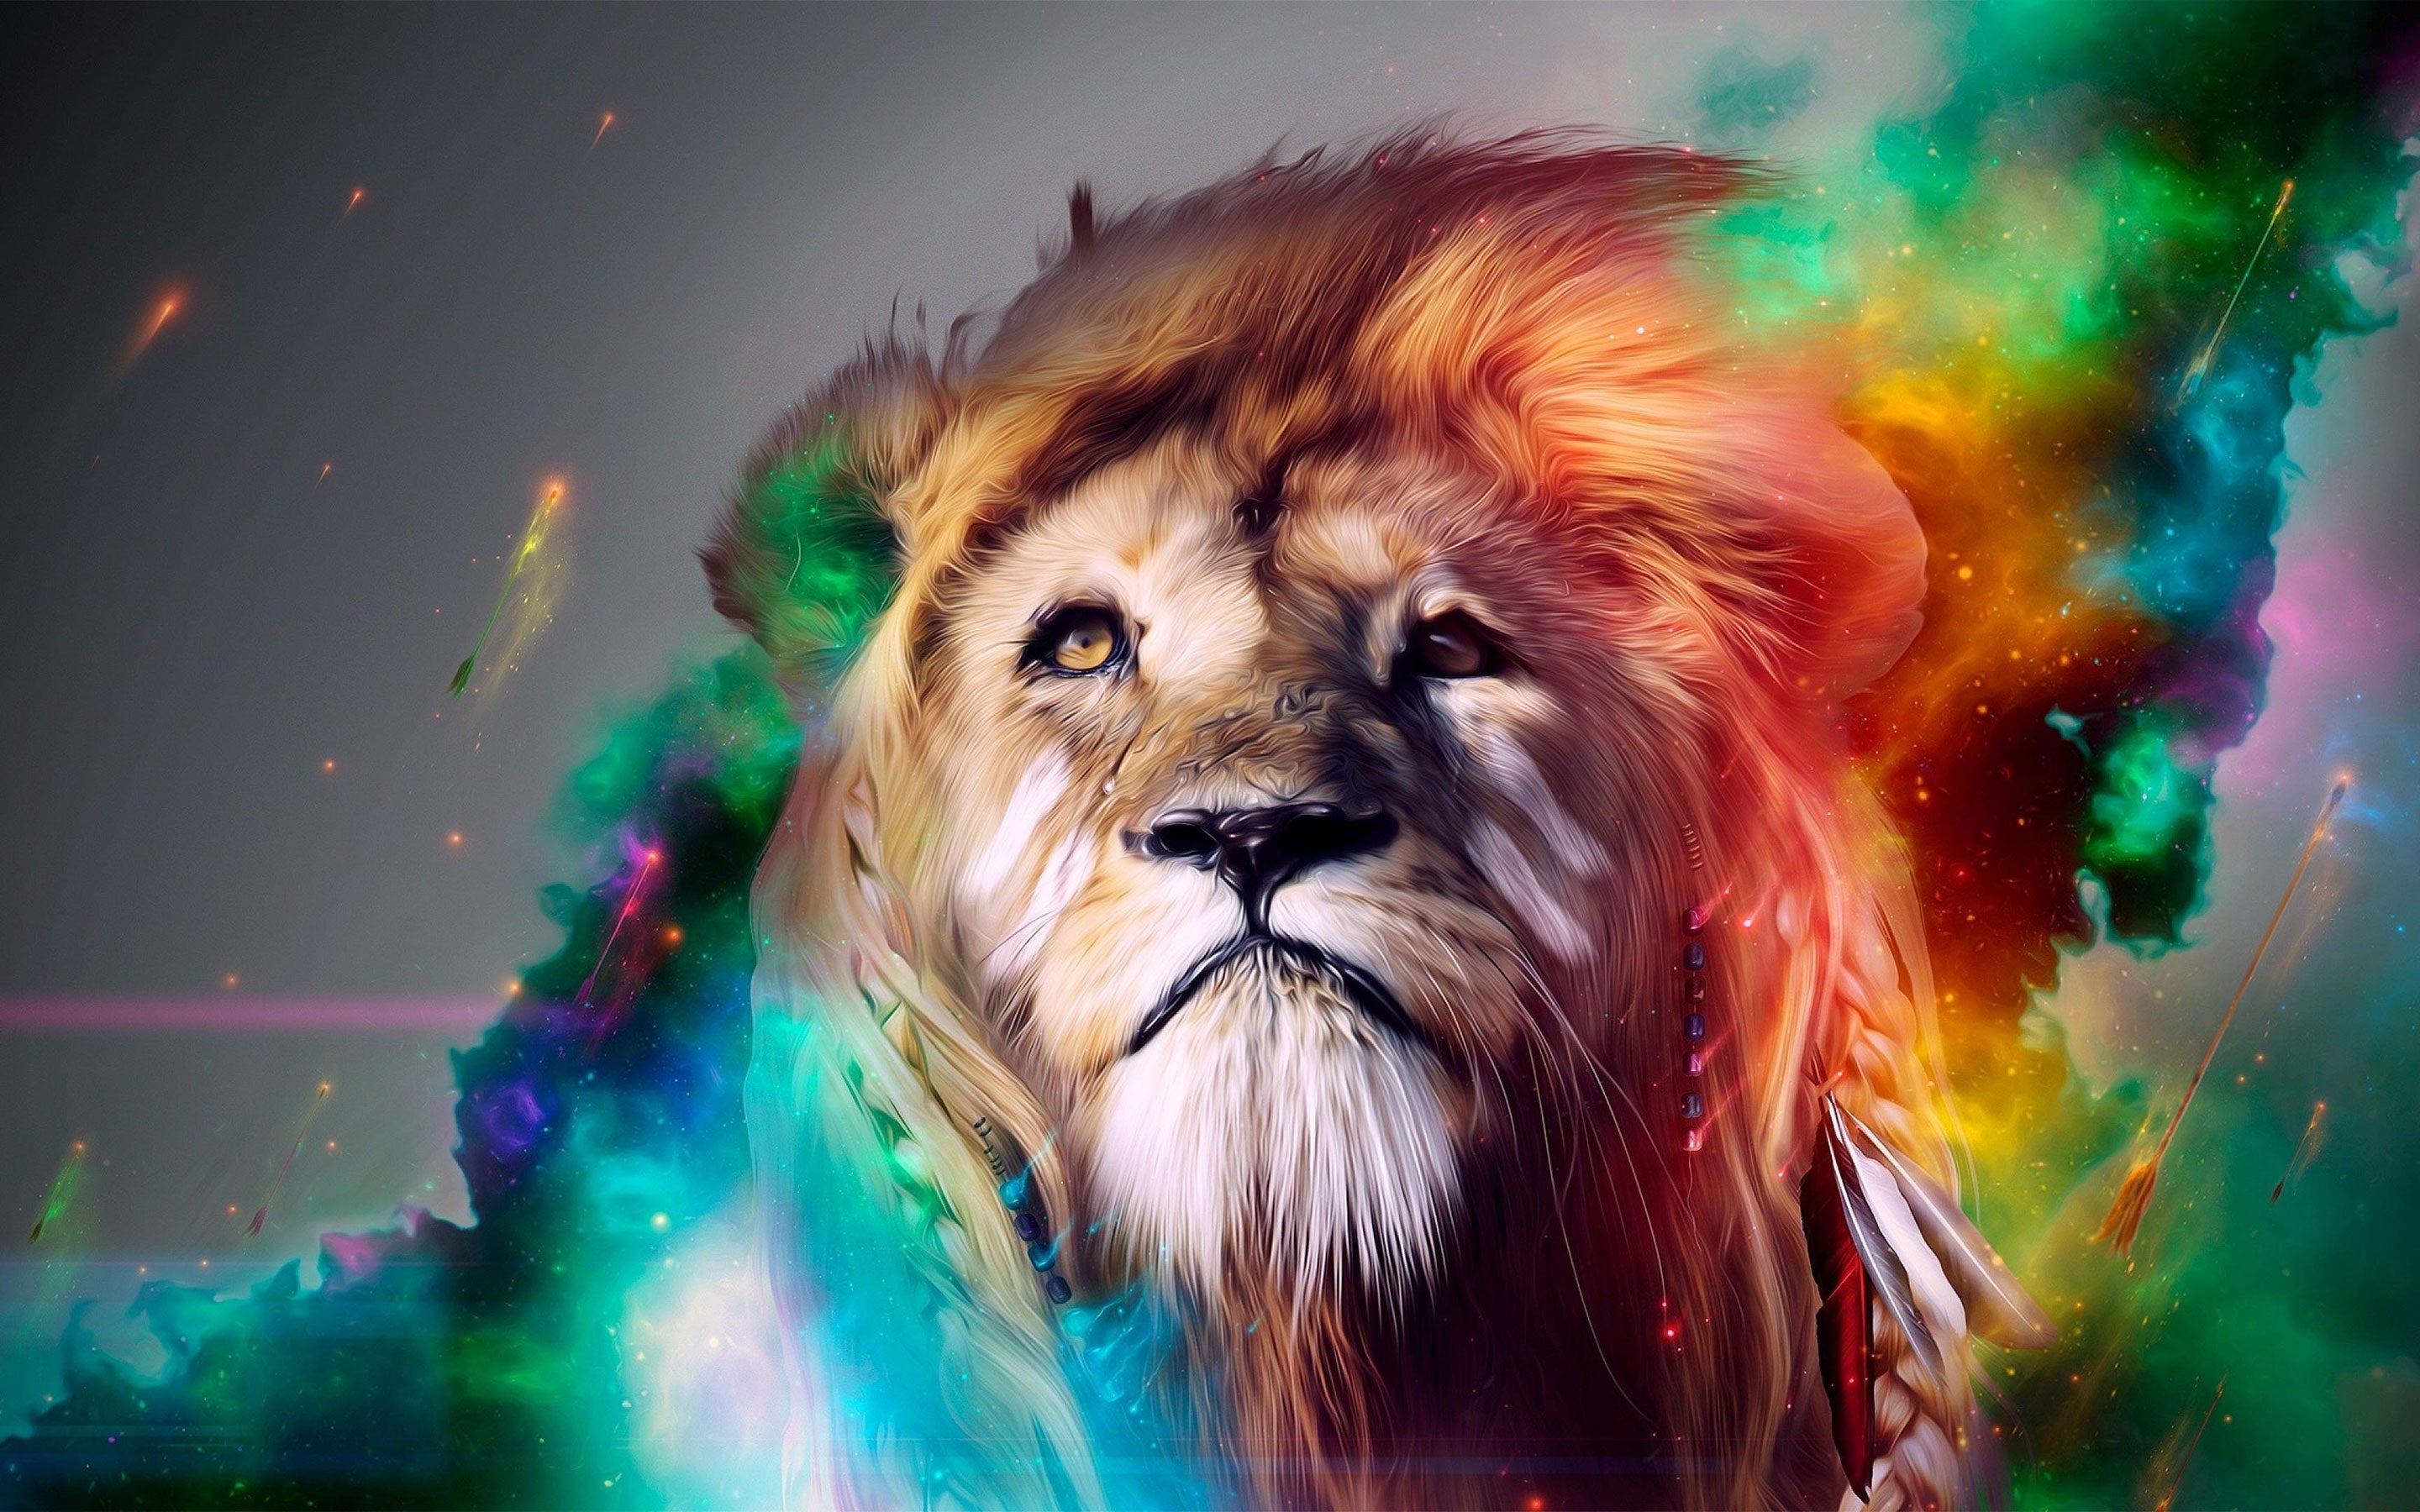 HD wallpaper: Colourful lion artwork-2017 High Quality Wallpaper, multi  colored | Wallpaper Flare